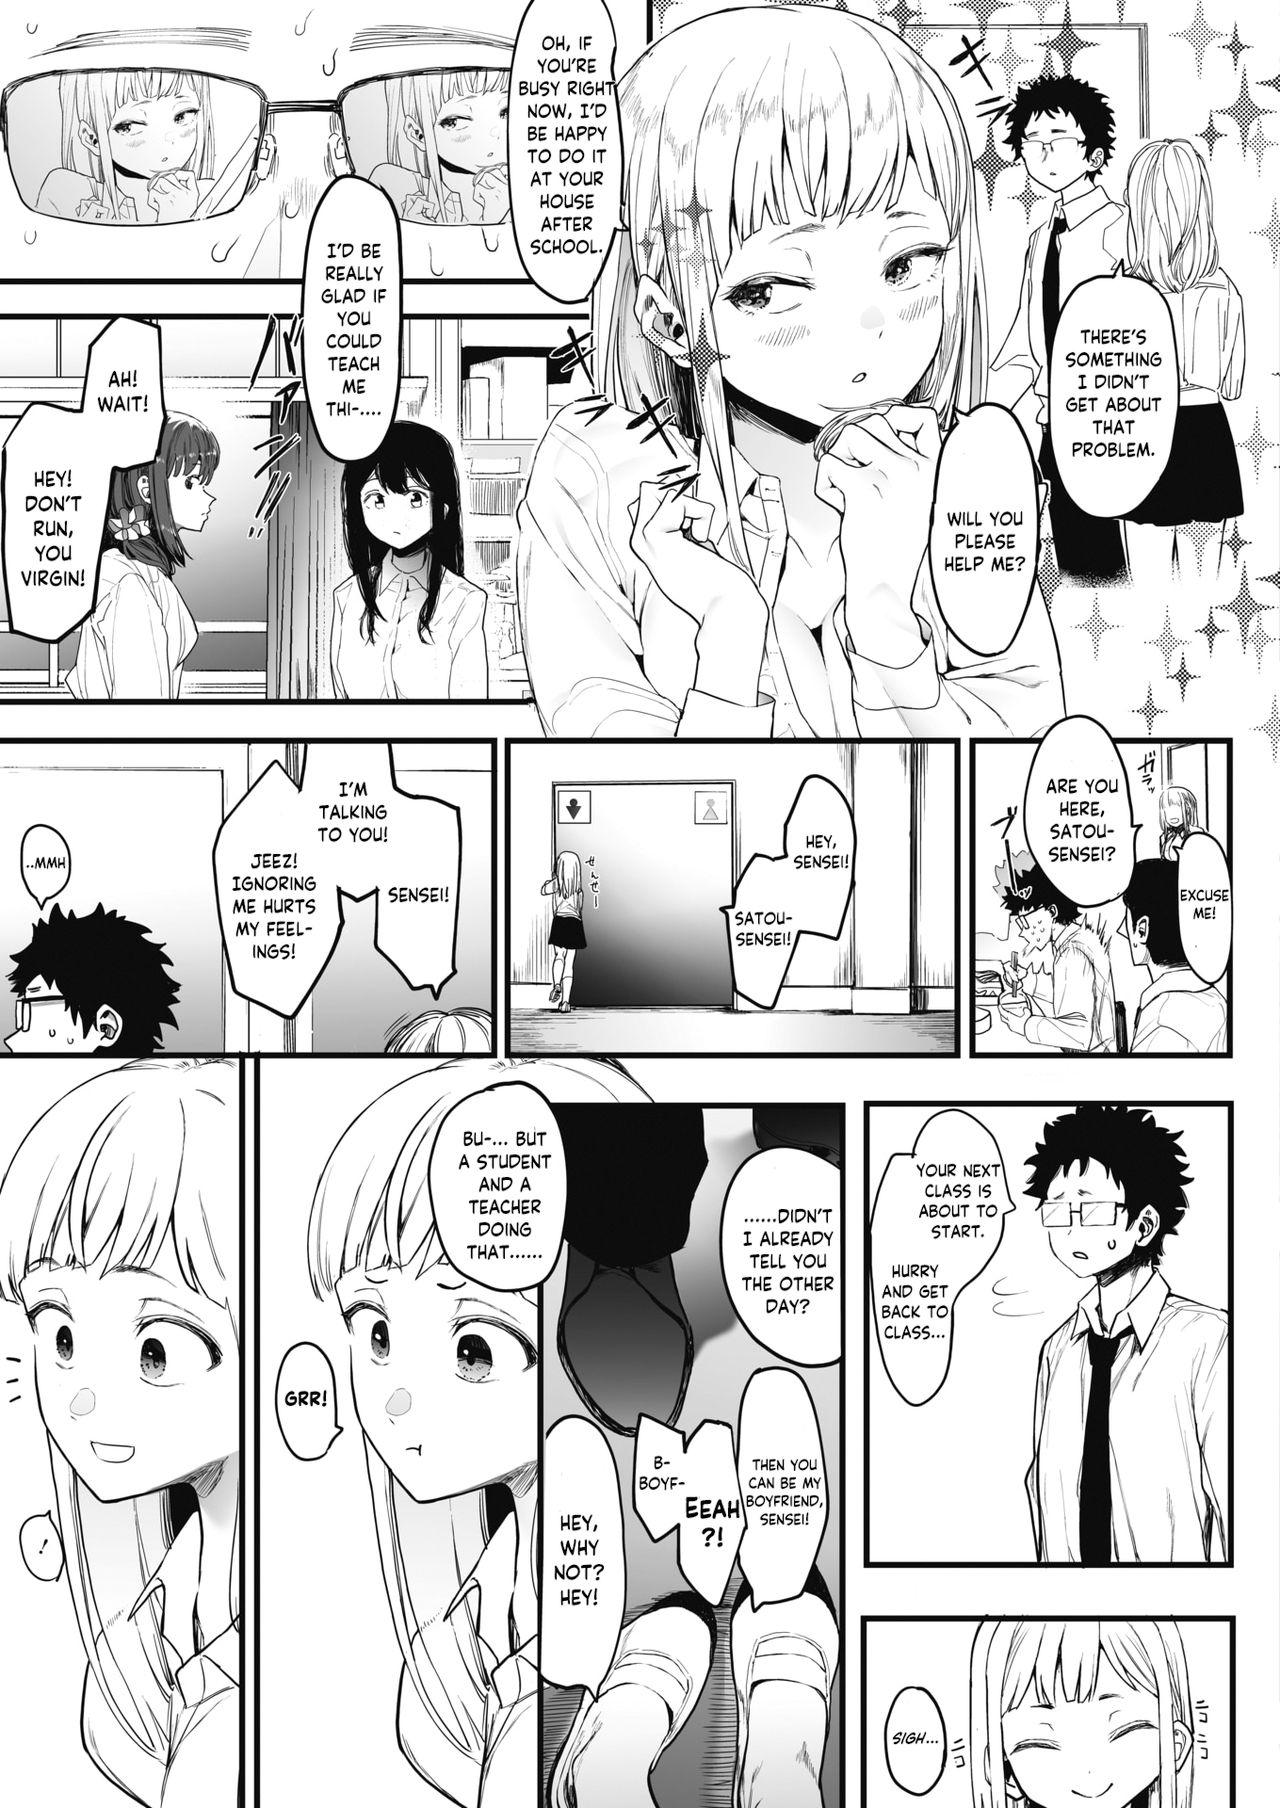 EIGHTMANsensei no okage de Kanojo ga dekimashita! | I Got a Girlfriend with Eightman-sensei's Help! 14